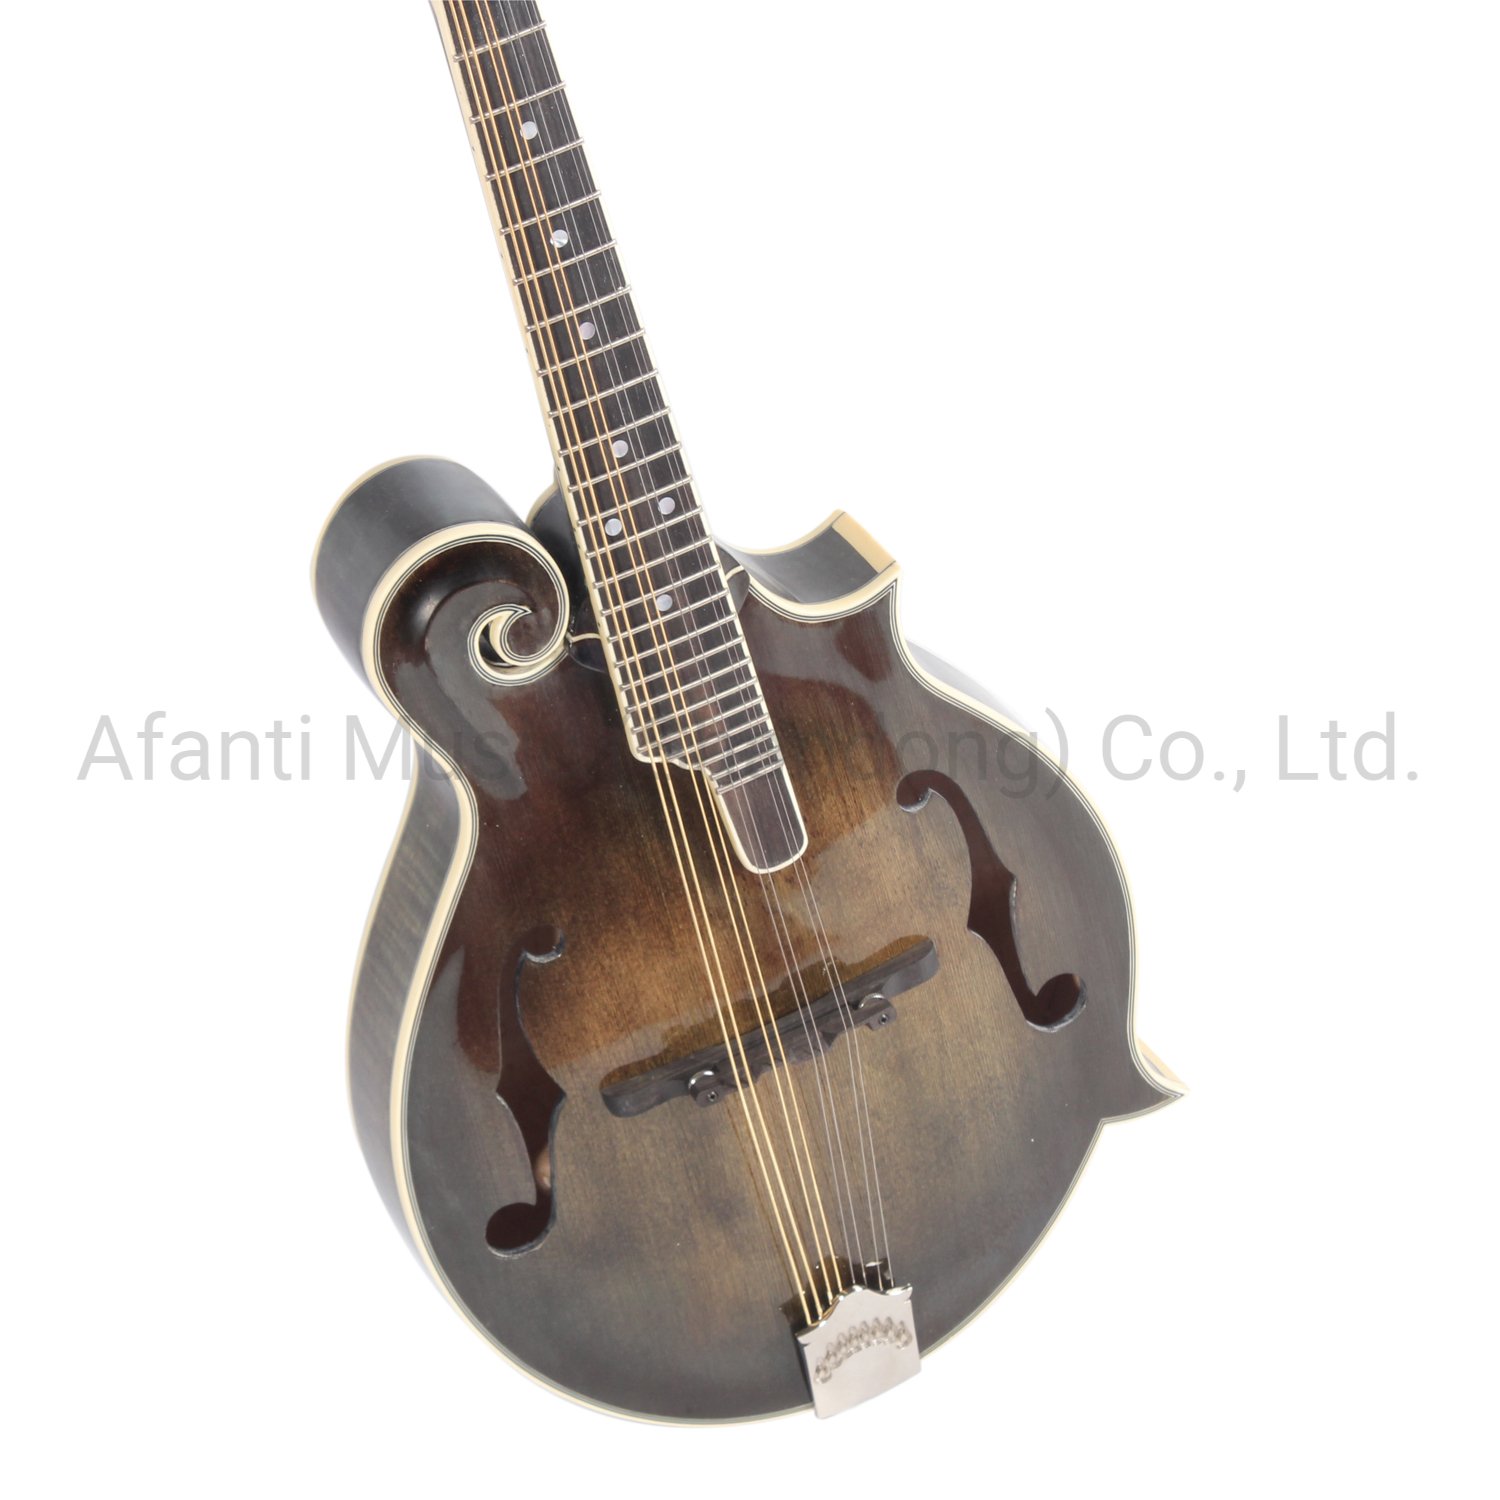 mandolin-2